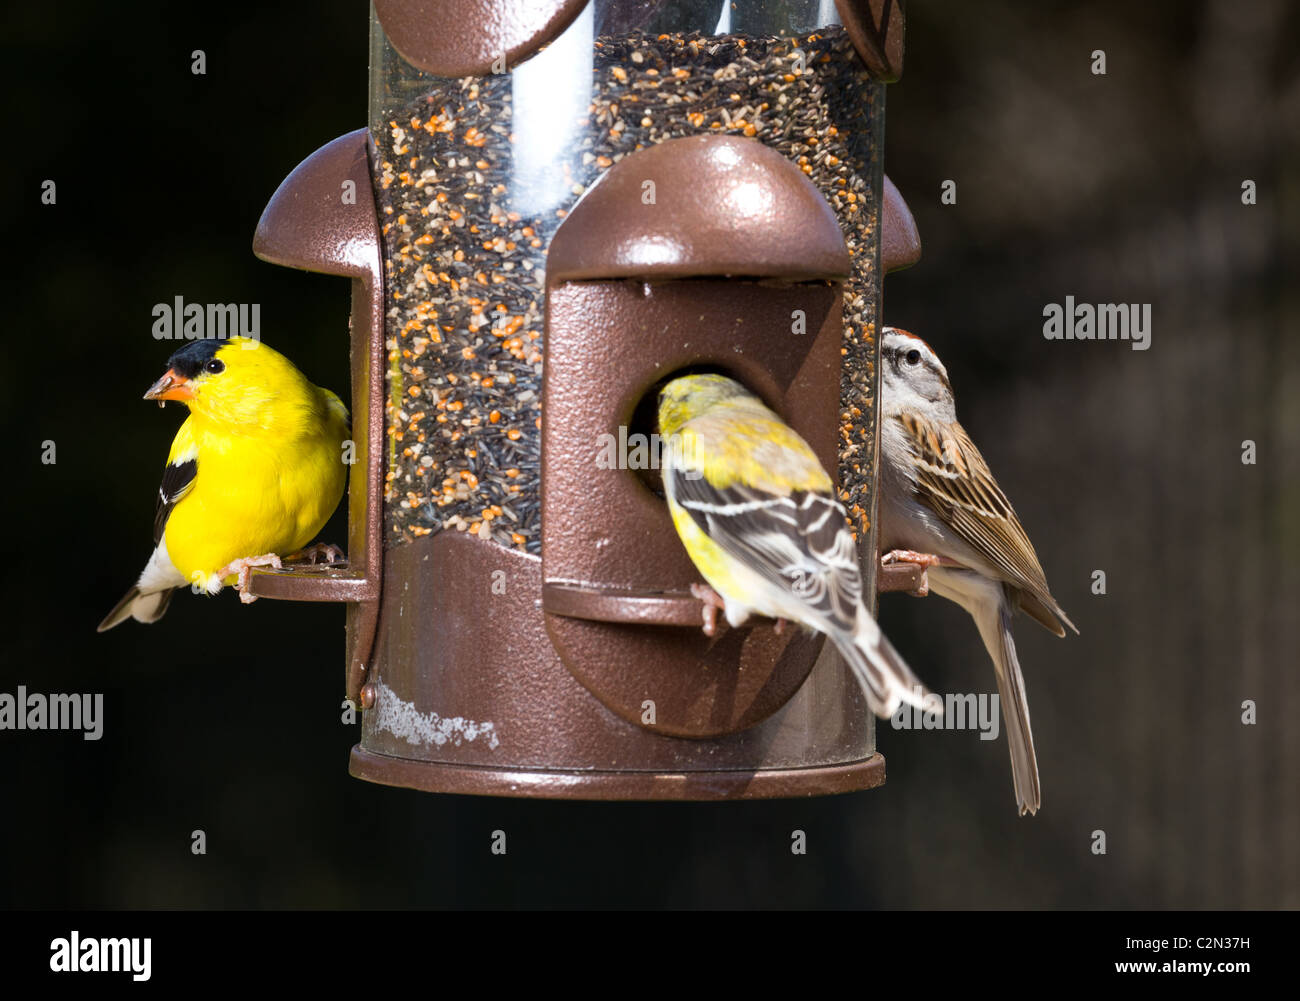 Jardín pájaros incluyendo un color amarillo brillante American goldfinch comer de un pájaro moderno, EE.UU. Foto de stock